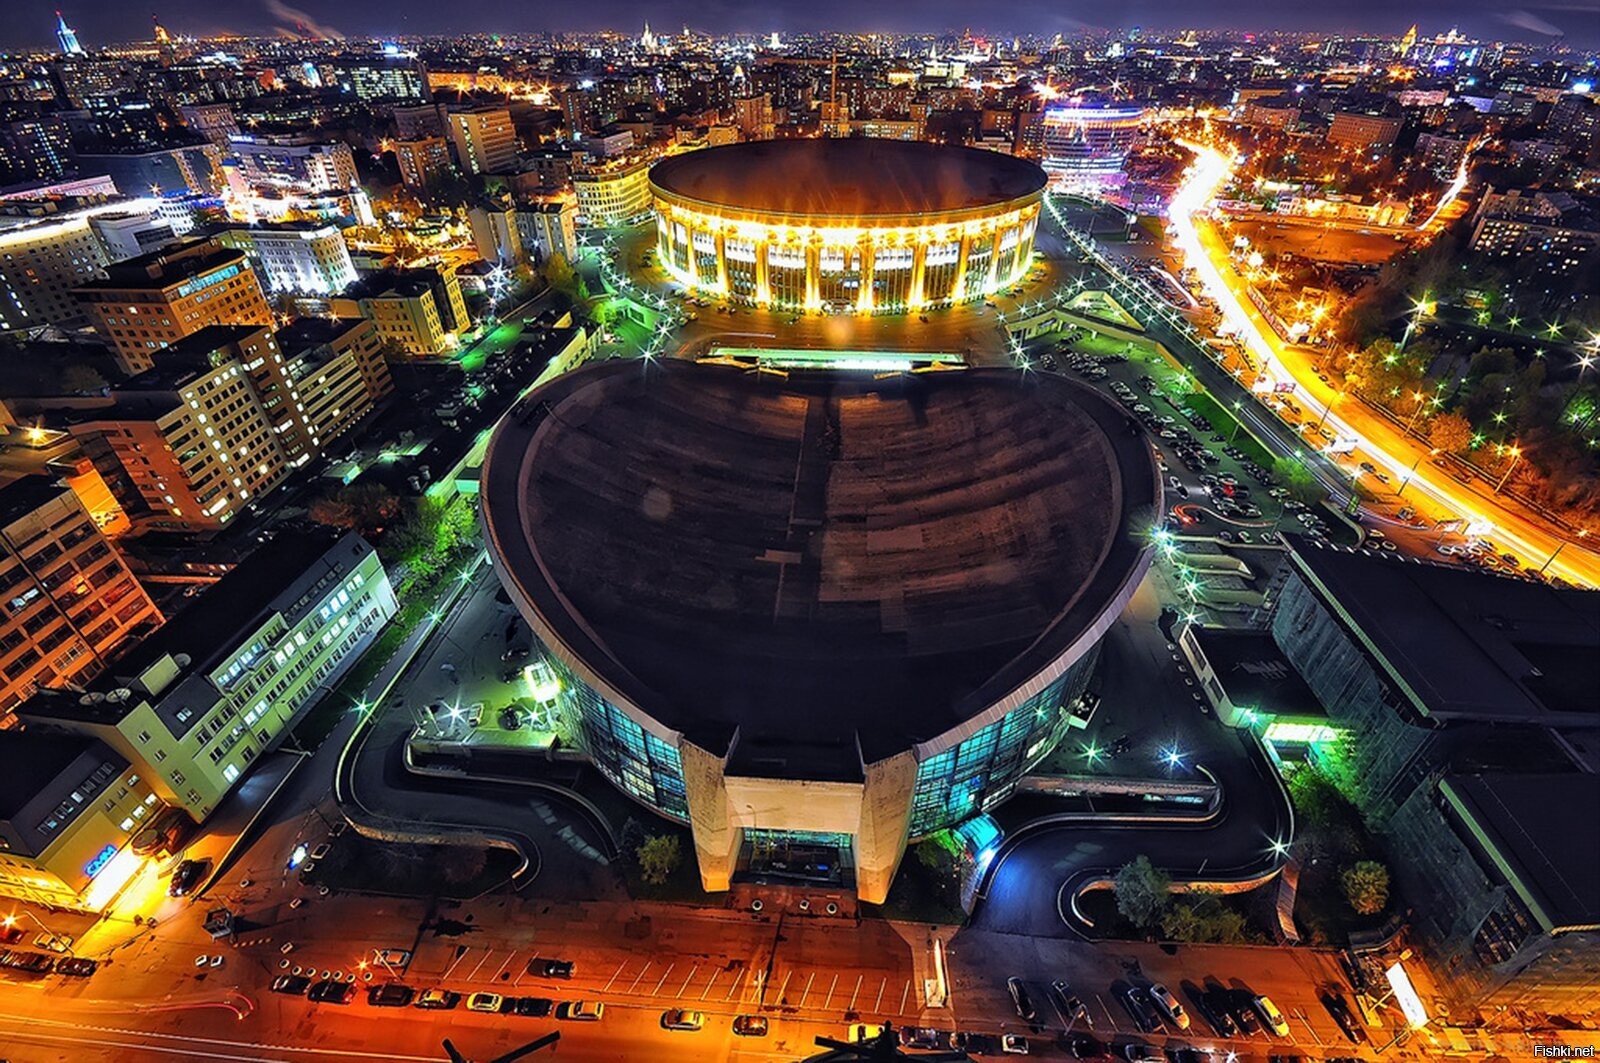 Олимпийский стадион москва сейчас фото 2022